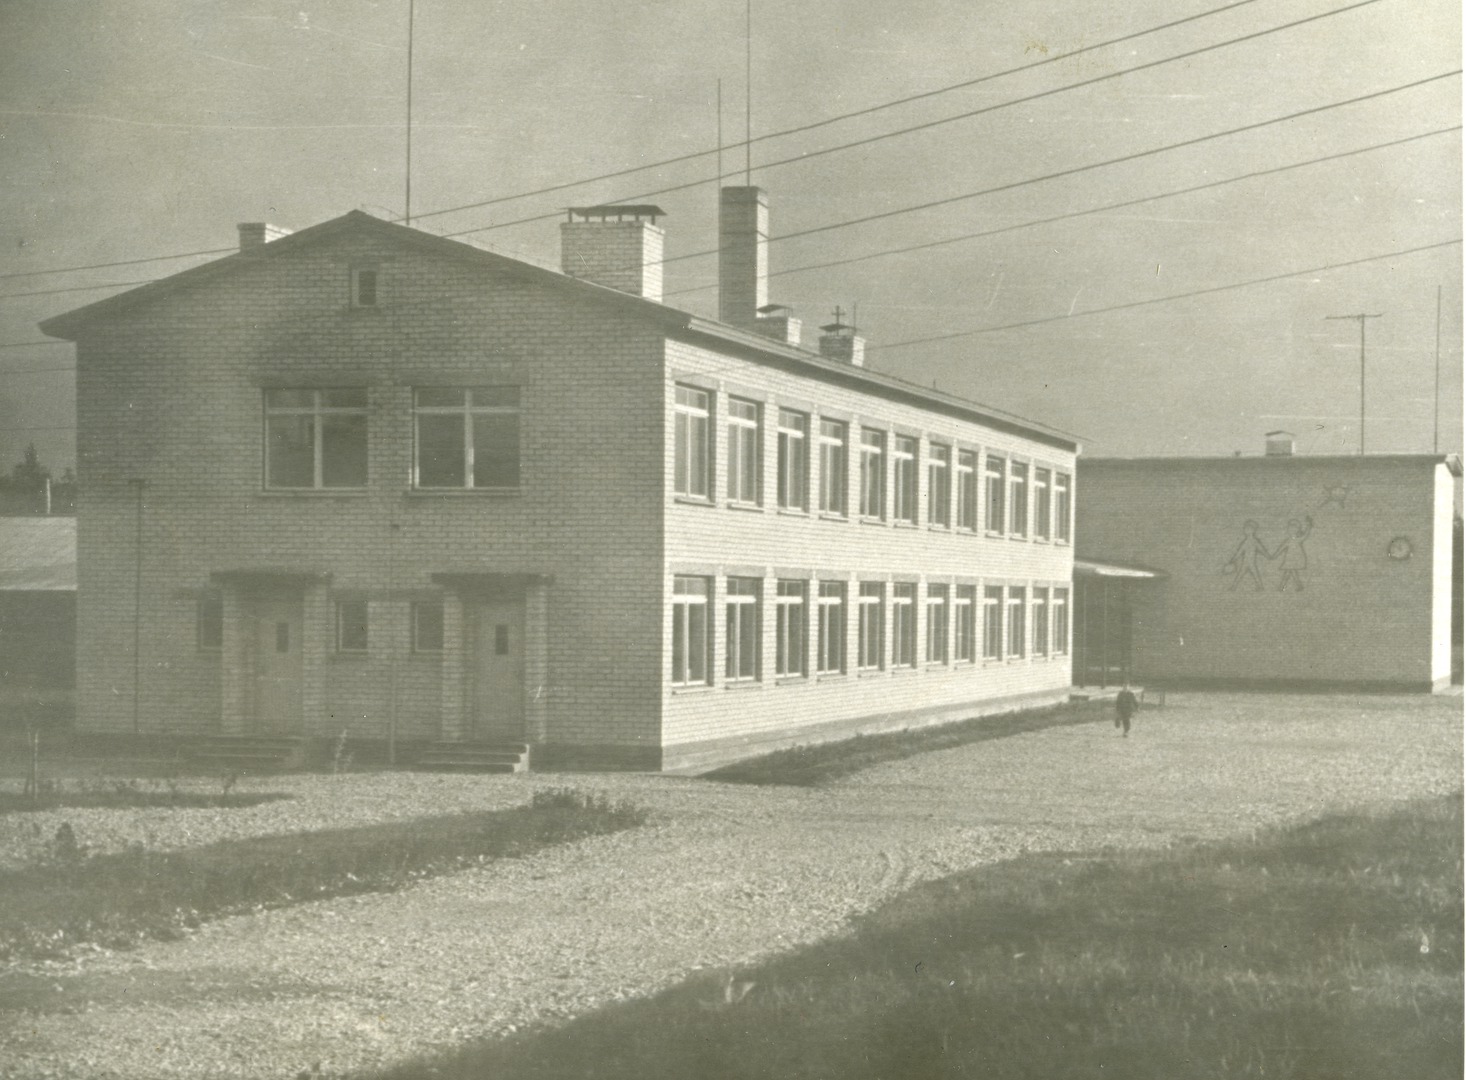 Torgu 8-kl School buildings in Saaremaa